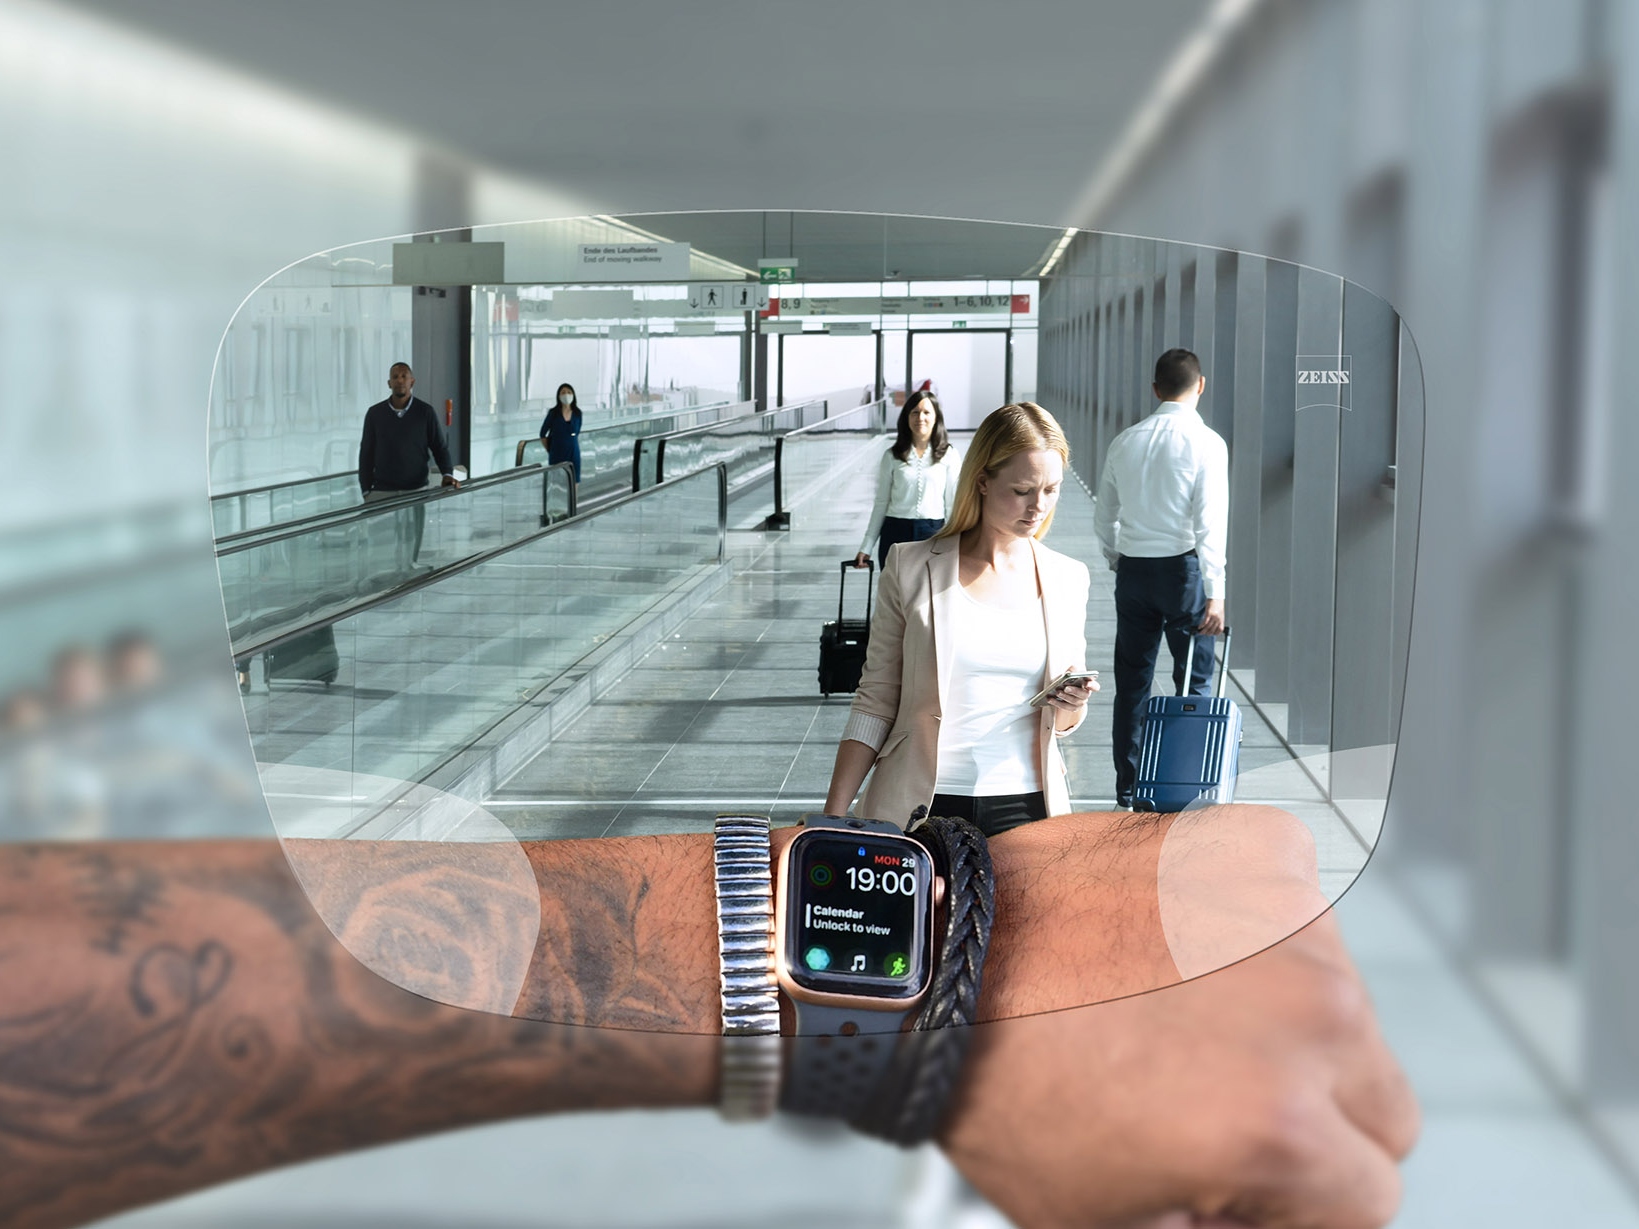 Osoba spogląda na zegarek przez okulary z soczewkami ZEISS SmartLife Digital. W tle widać typową sytuację na lotnisku z ludźmi pchającymi walizki, przemieszczającymi się na ruchomych schodach. 